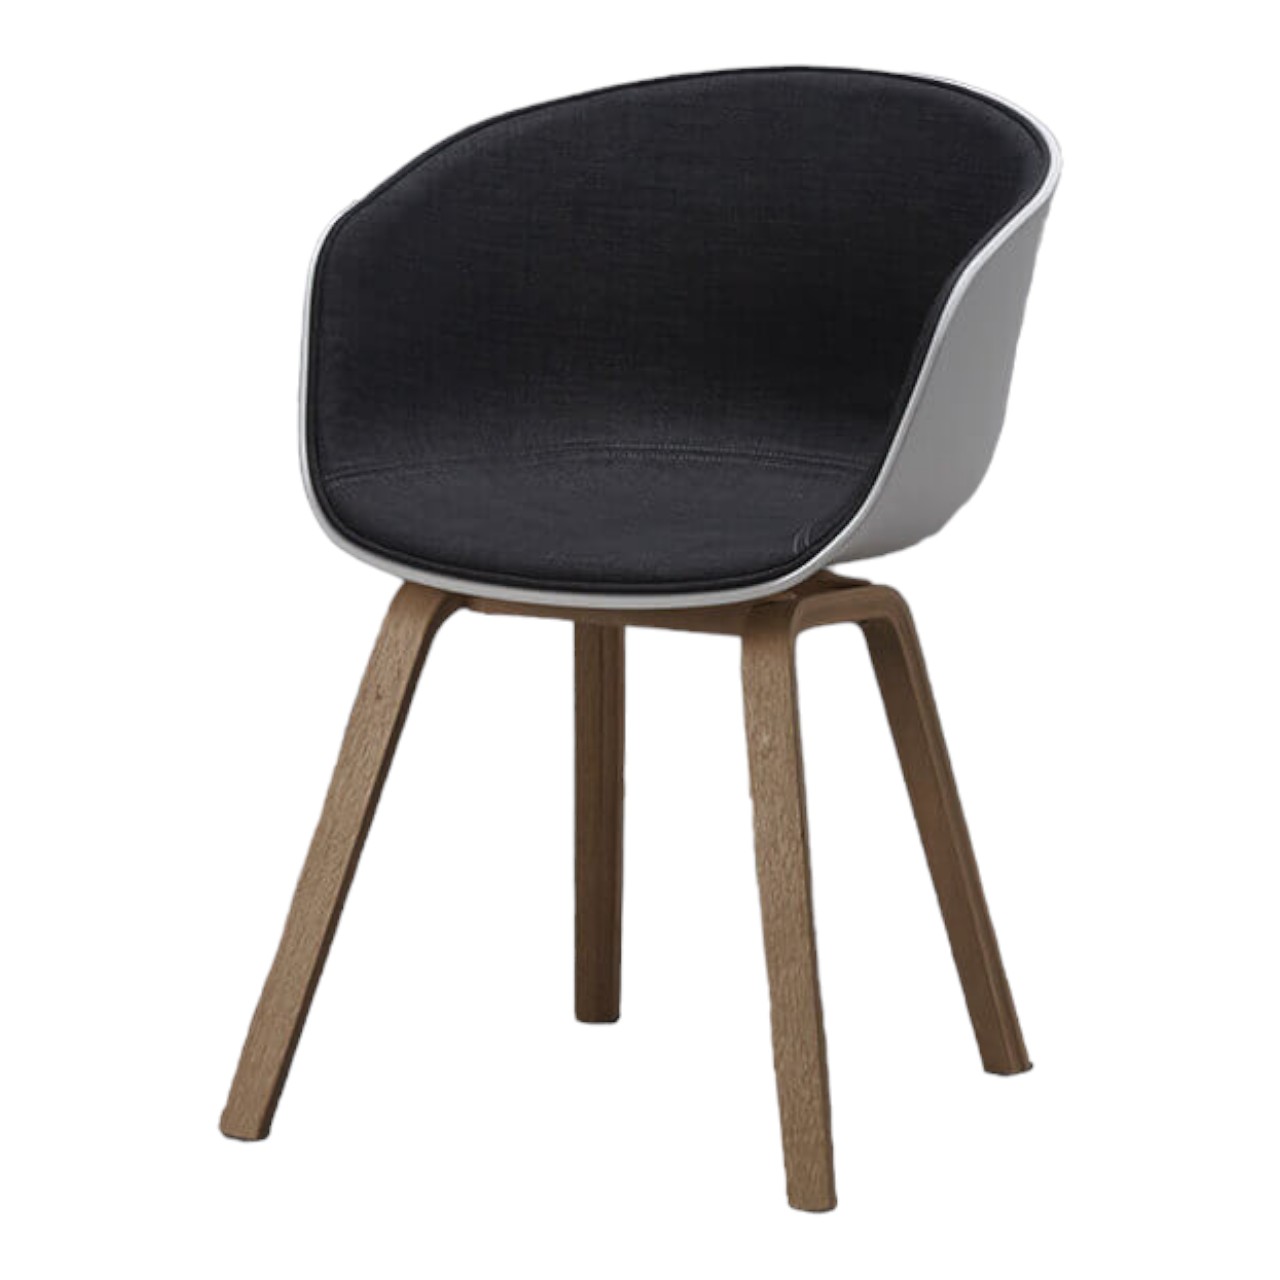 Ghế Hay chair nệm vải chân gỗ: KG – A240-1